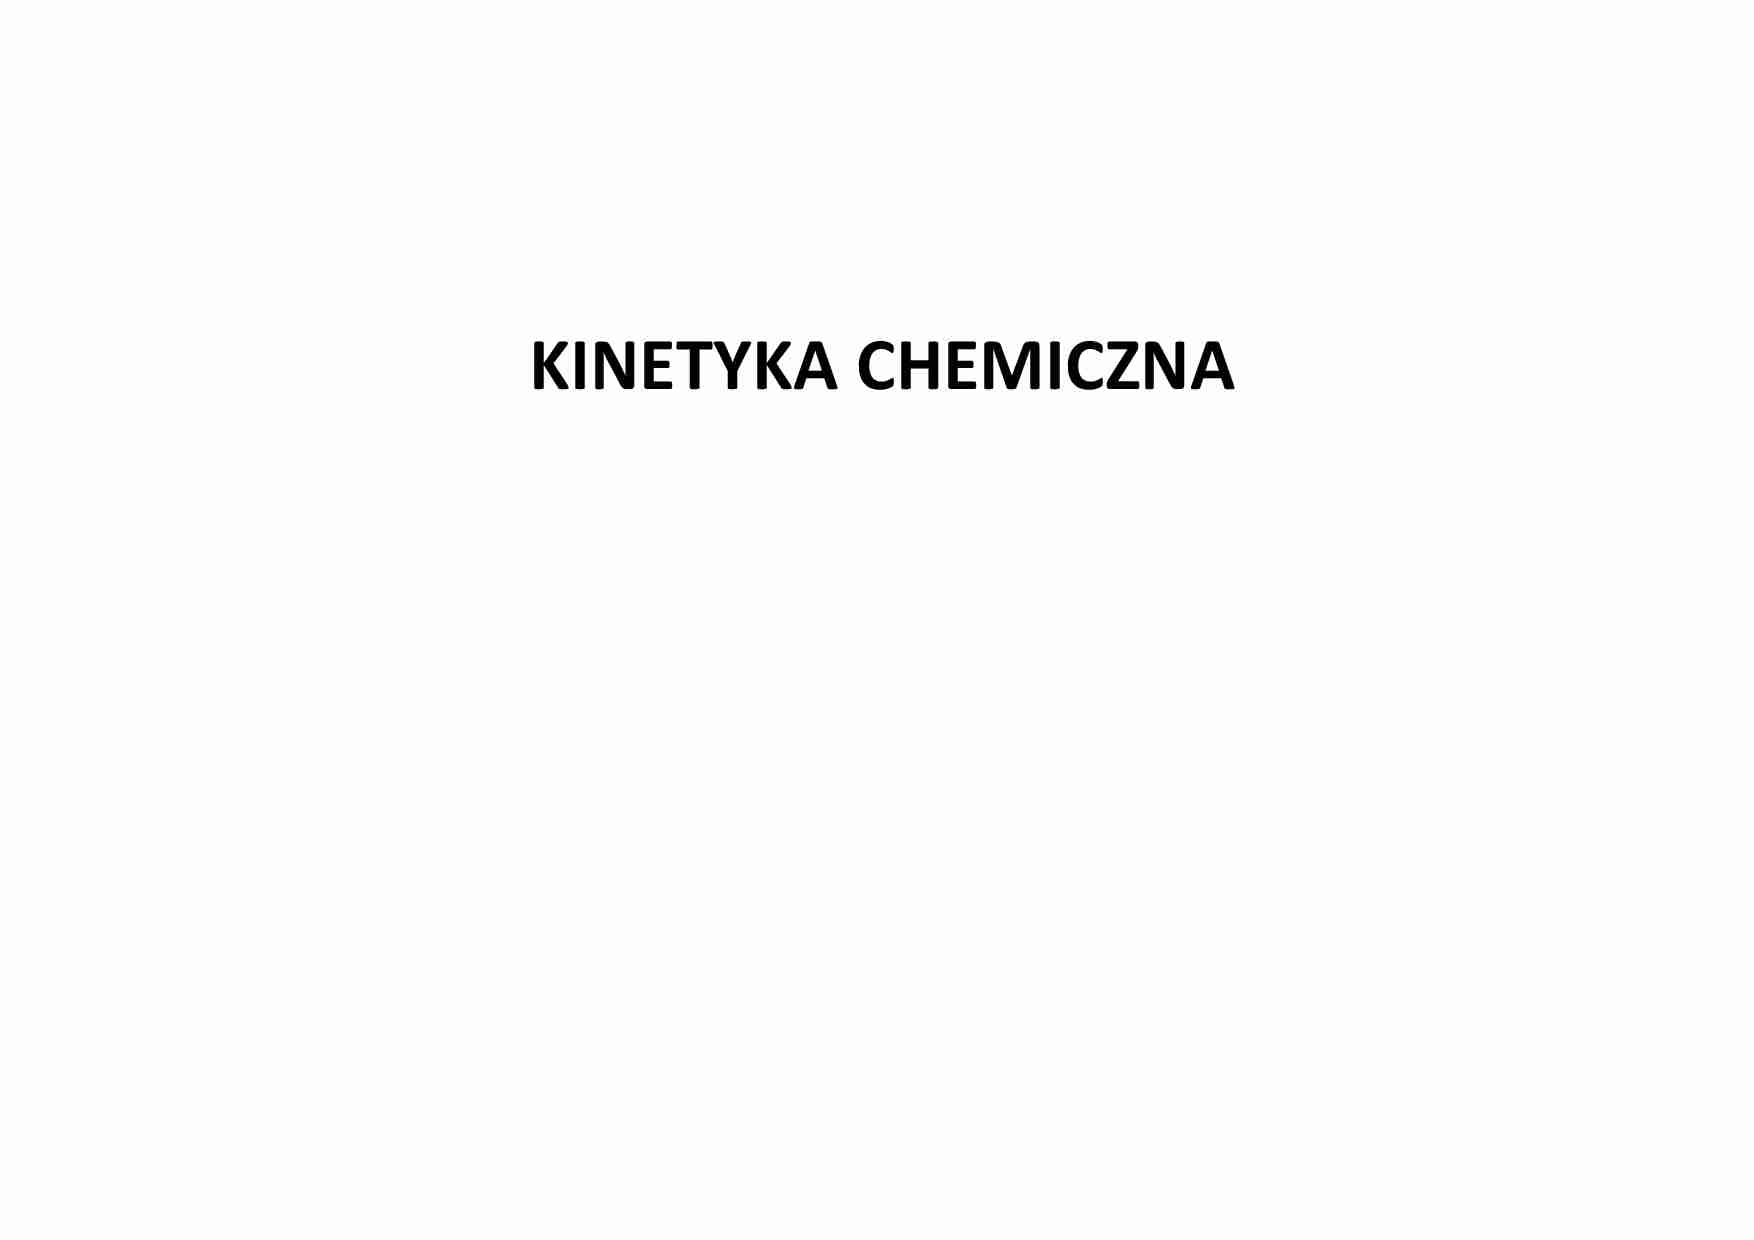 Kinetyka - definicja szybkości reakcji chemicznej - strona 1